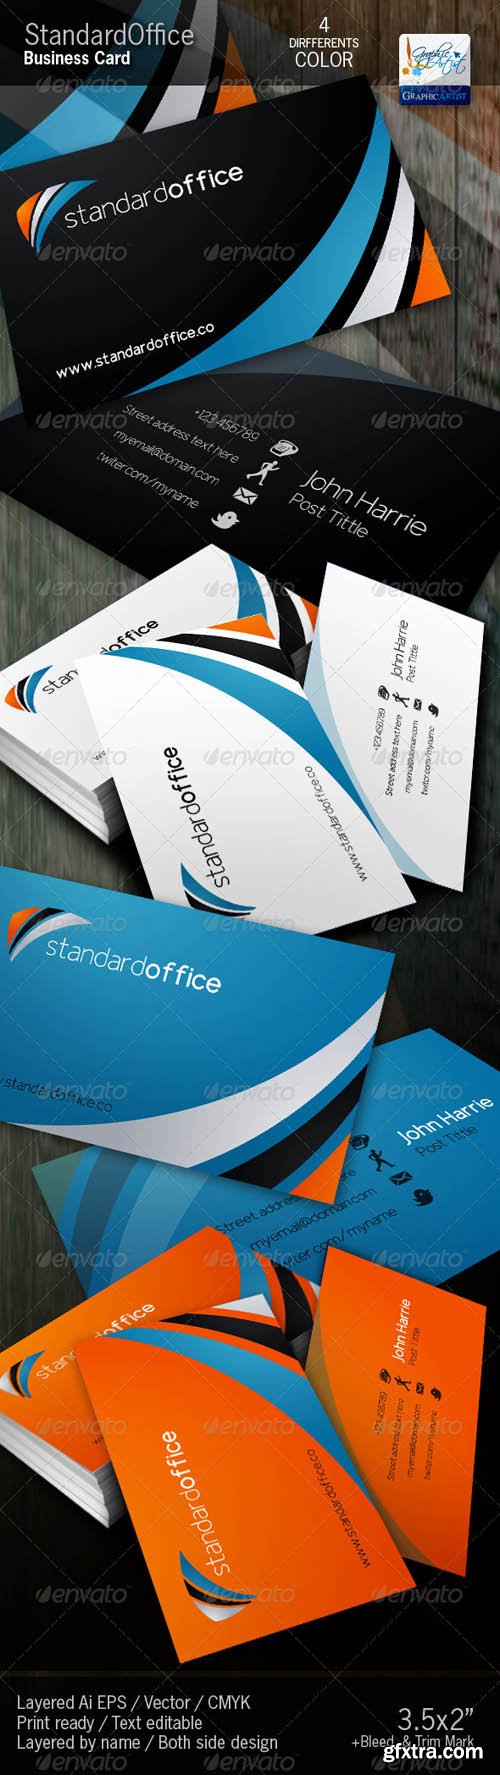 GR - Standard office Business Card 590650